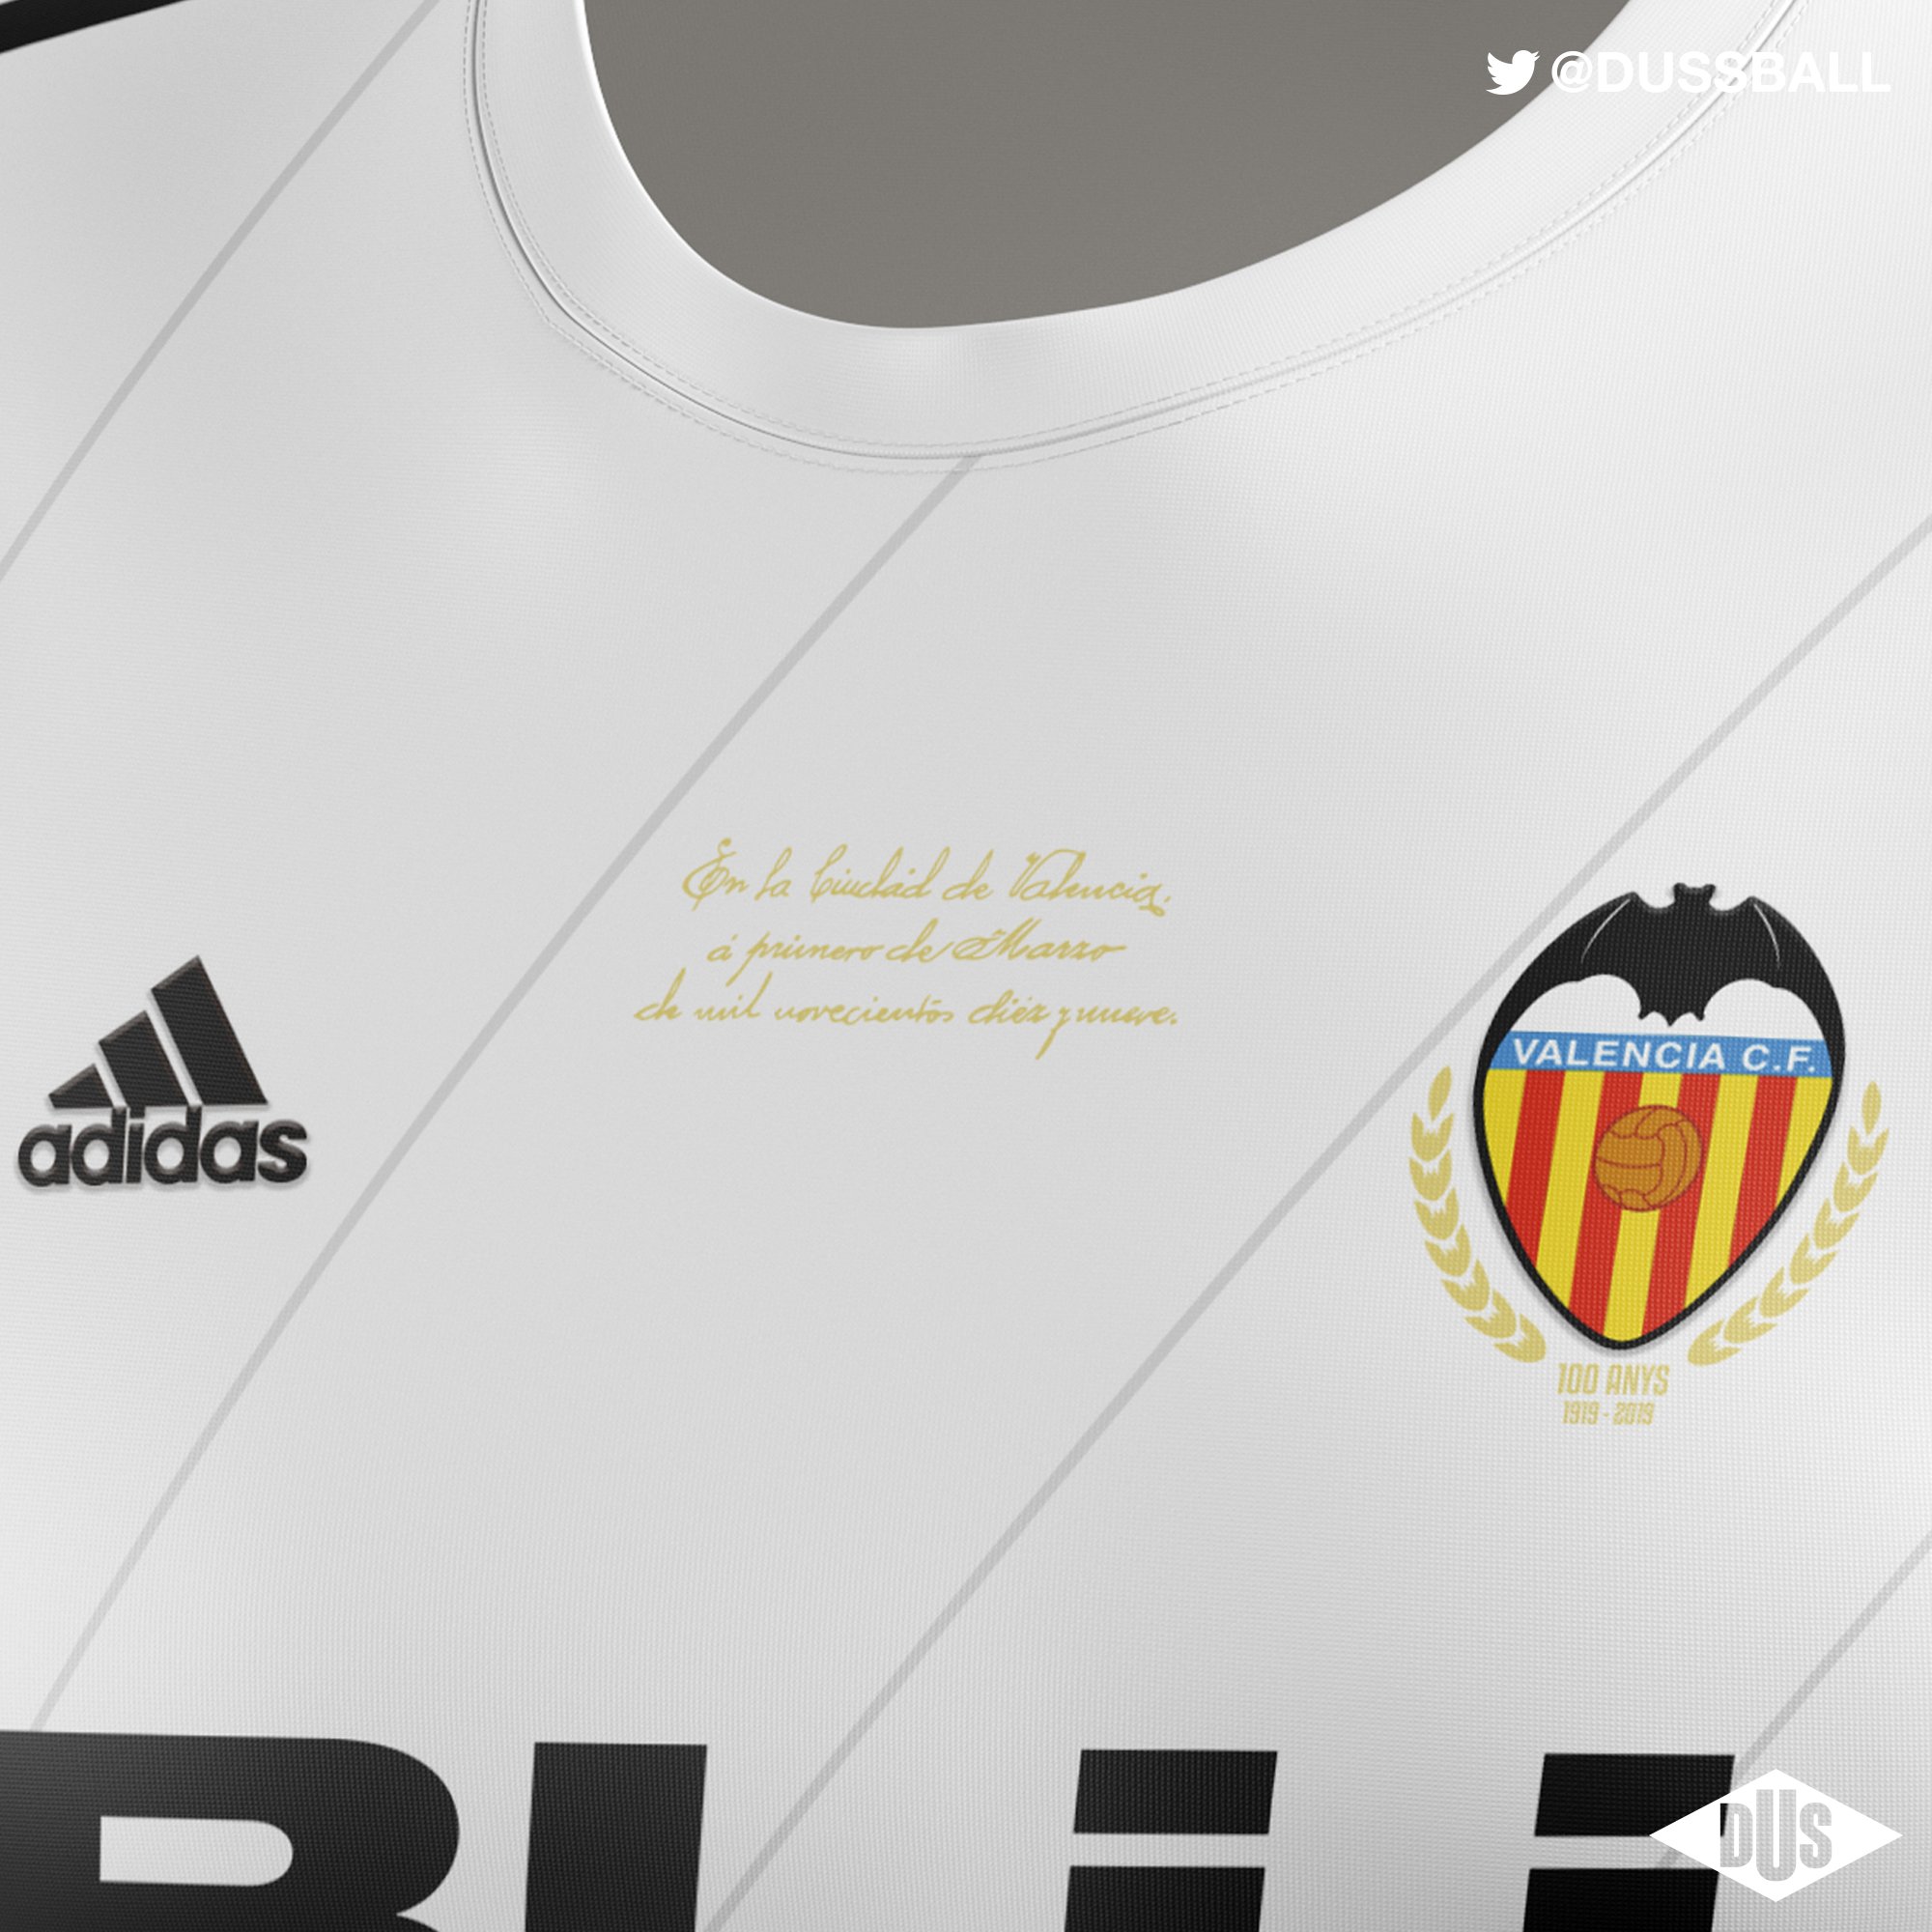 Dus on Twitter: | Camiseta CENTENARIO @valenciacf. Una equipación utilizada como lienzo el sobre el que celebrar 100 años de historia. Va HILO. https://t.co/gDYcELA62c" /